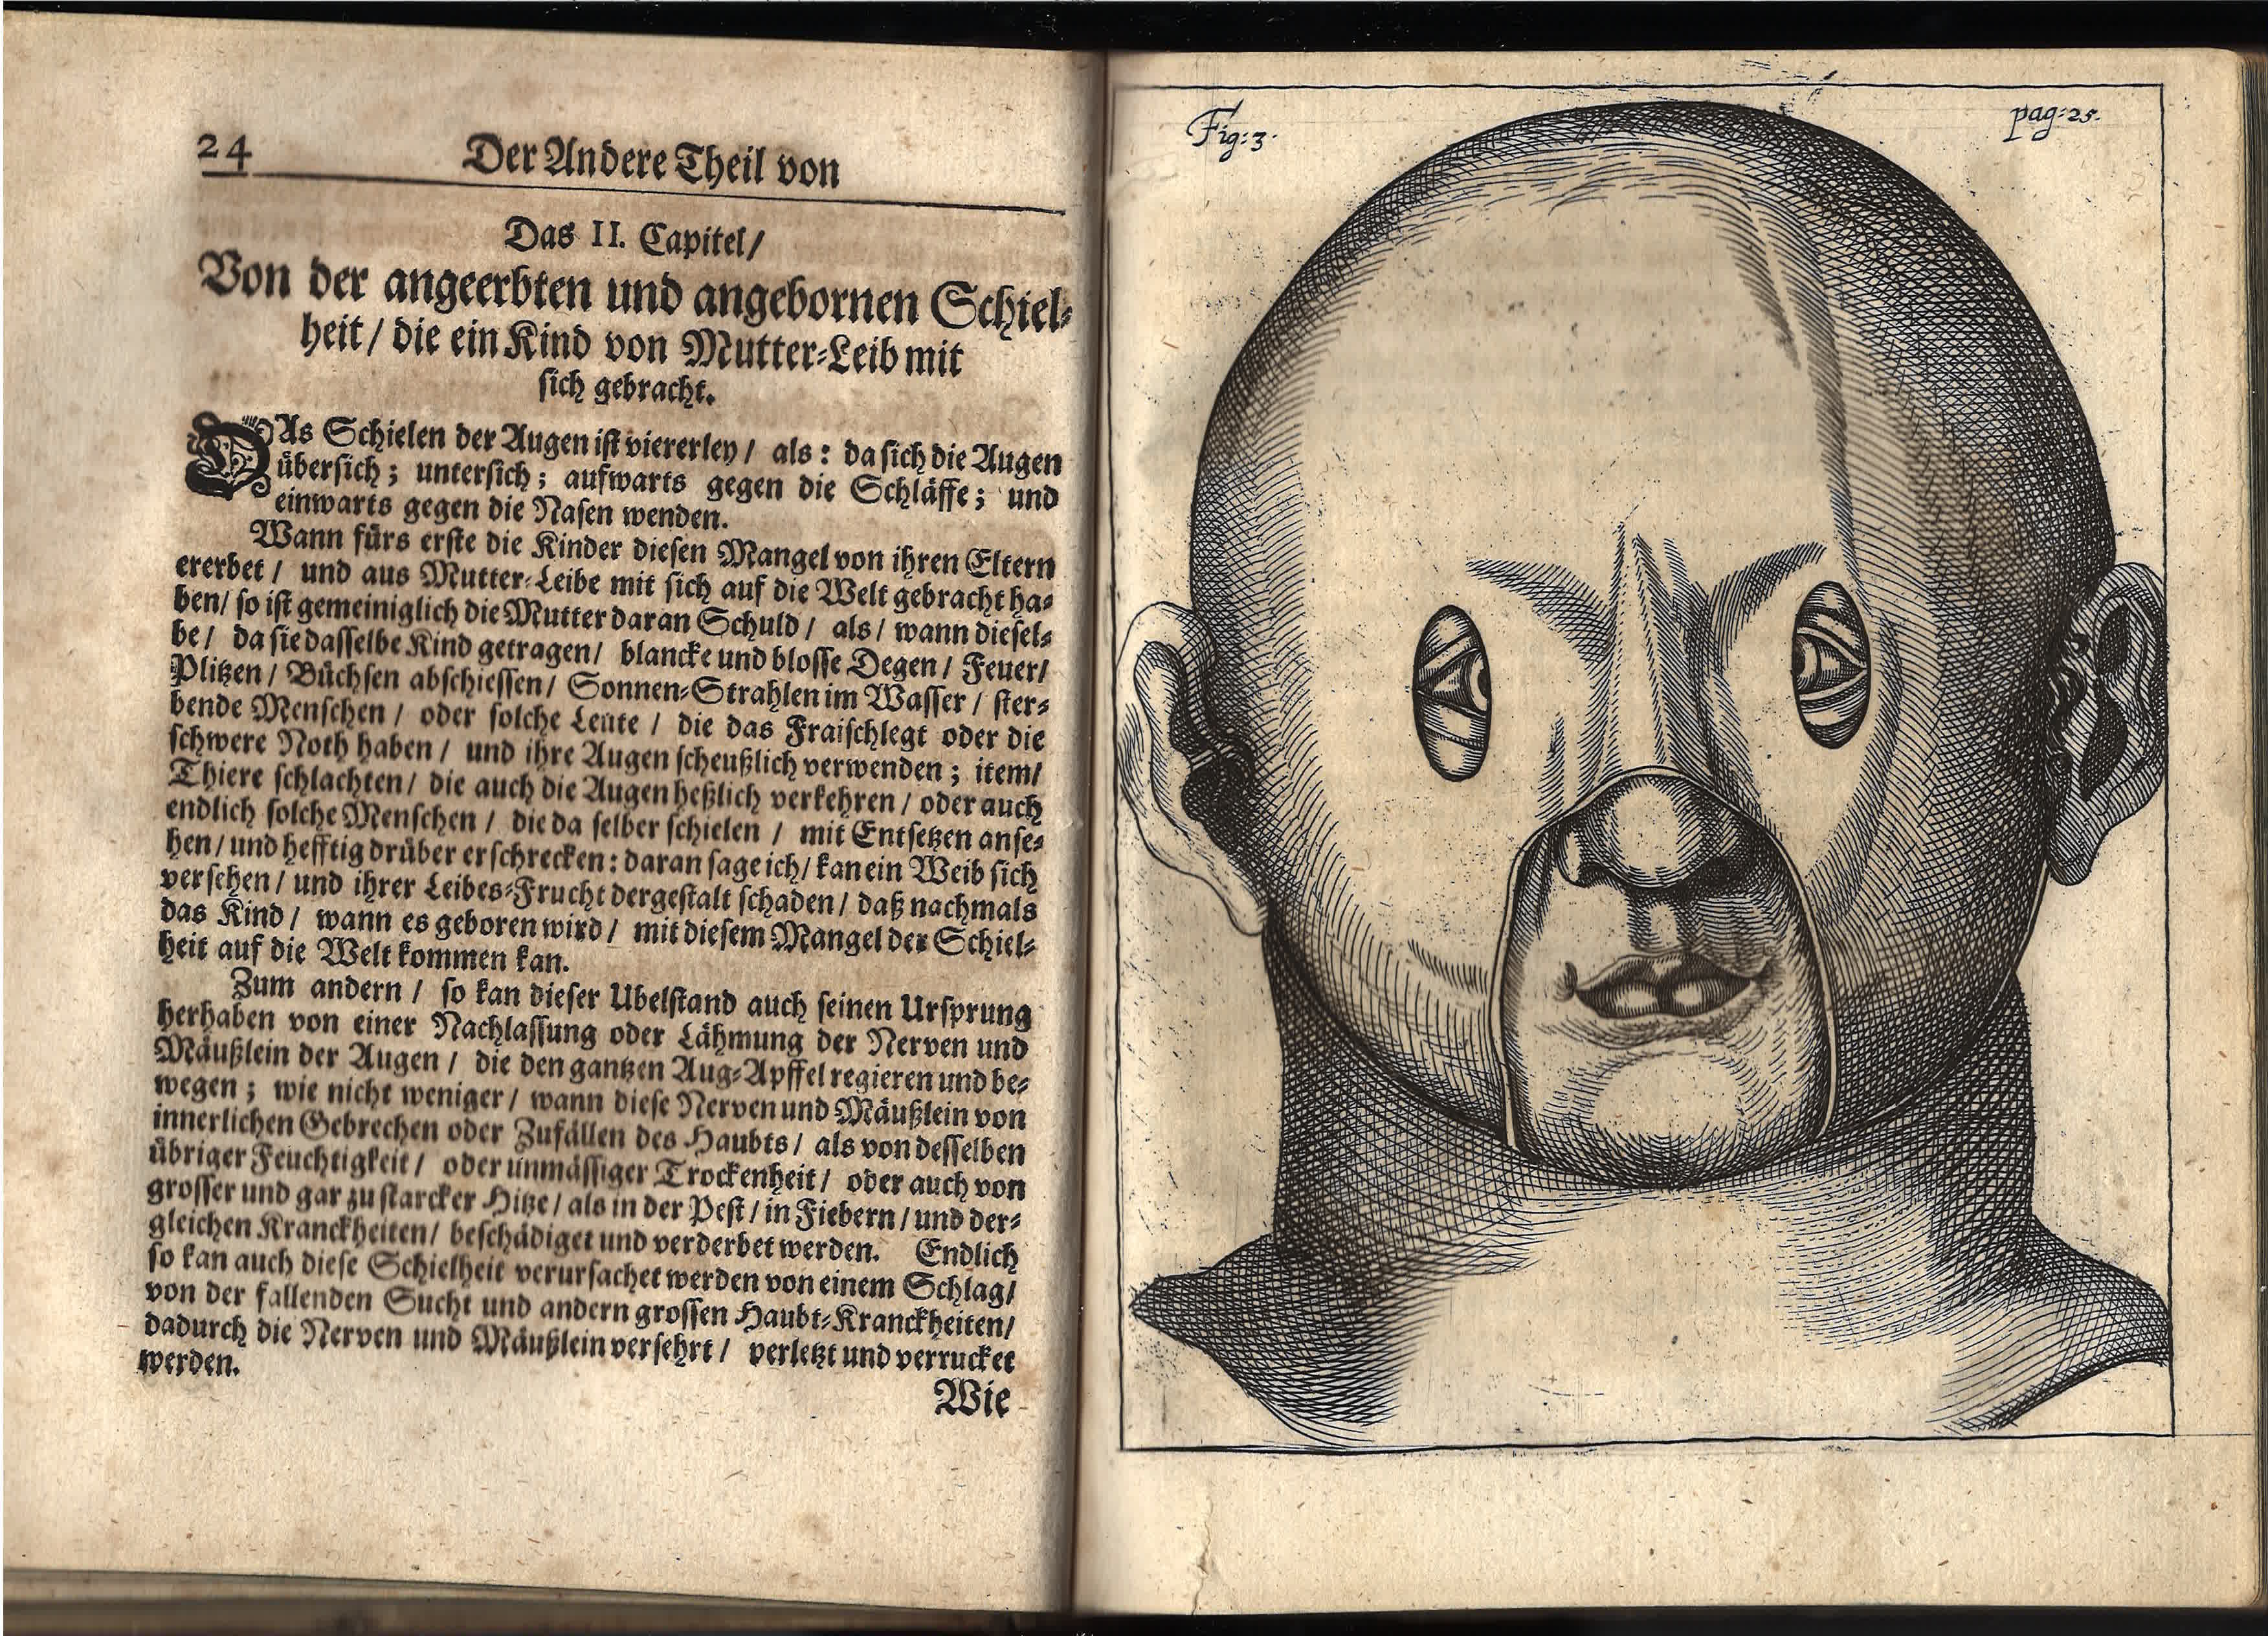 1686 Bartisch Augendienst - mask for strabismus treatment